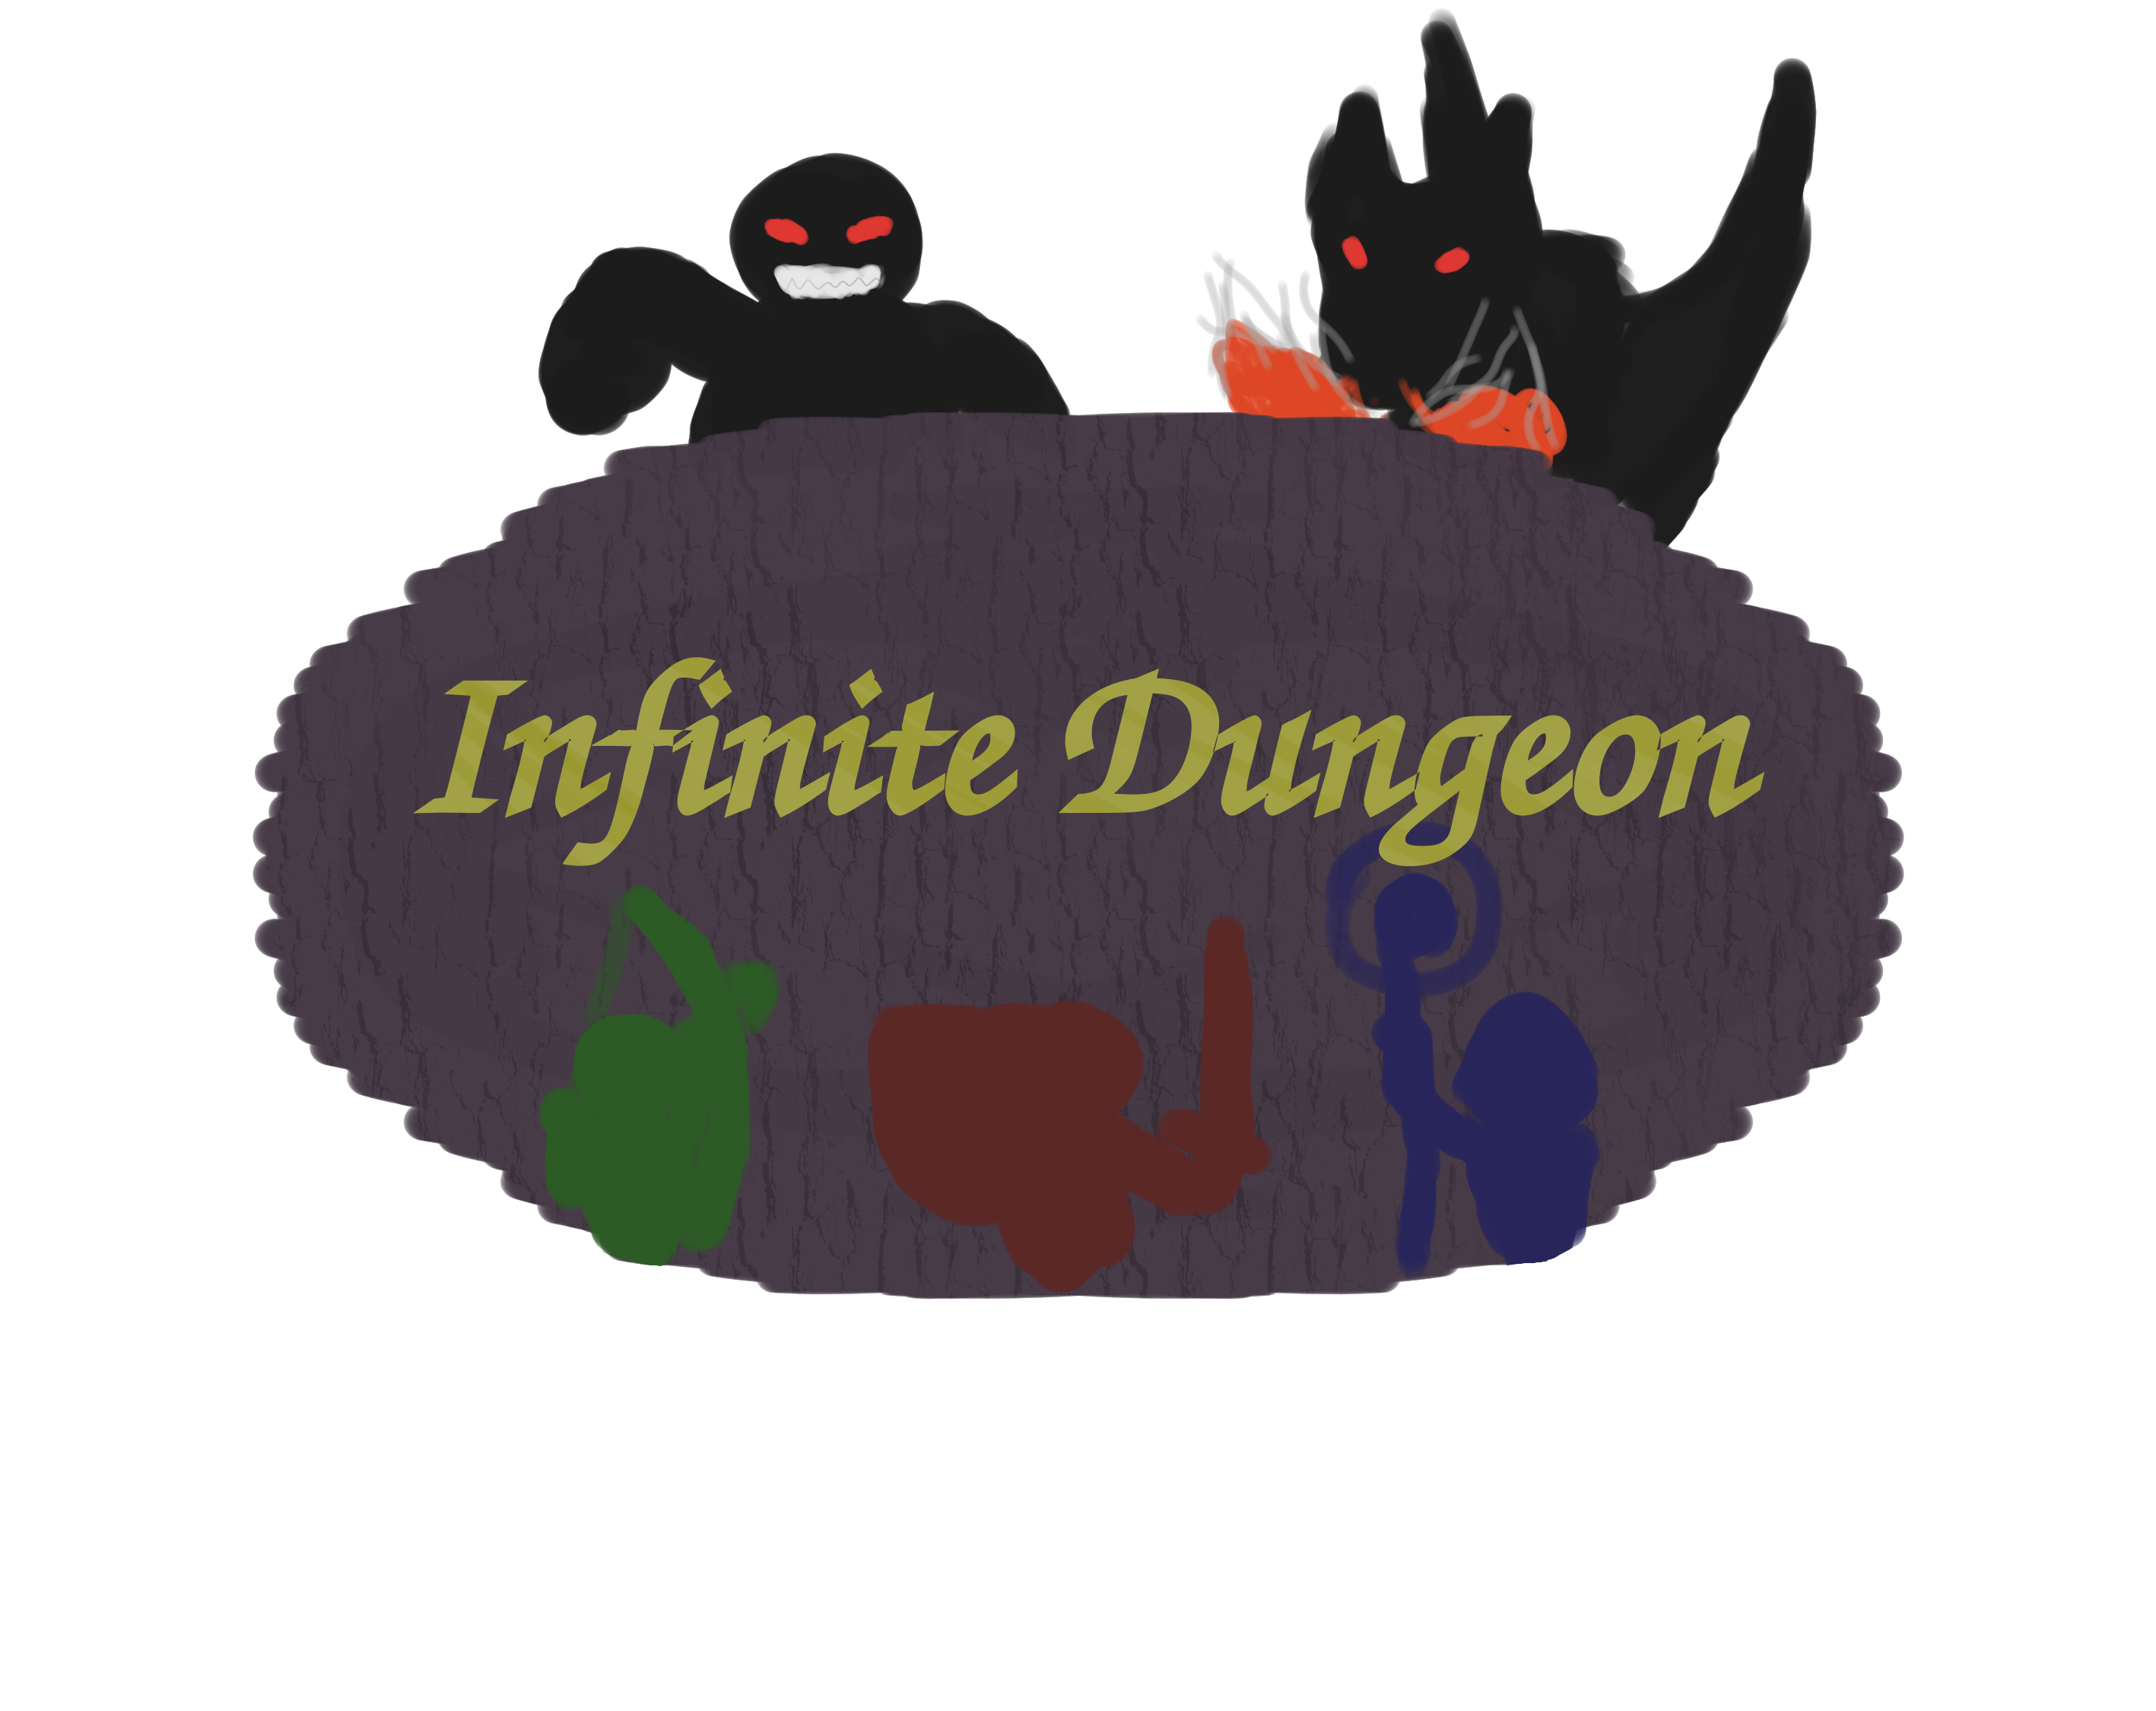 Infinite Dungeon